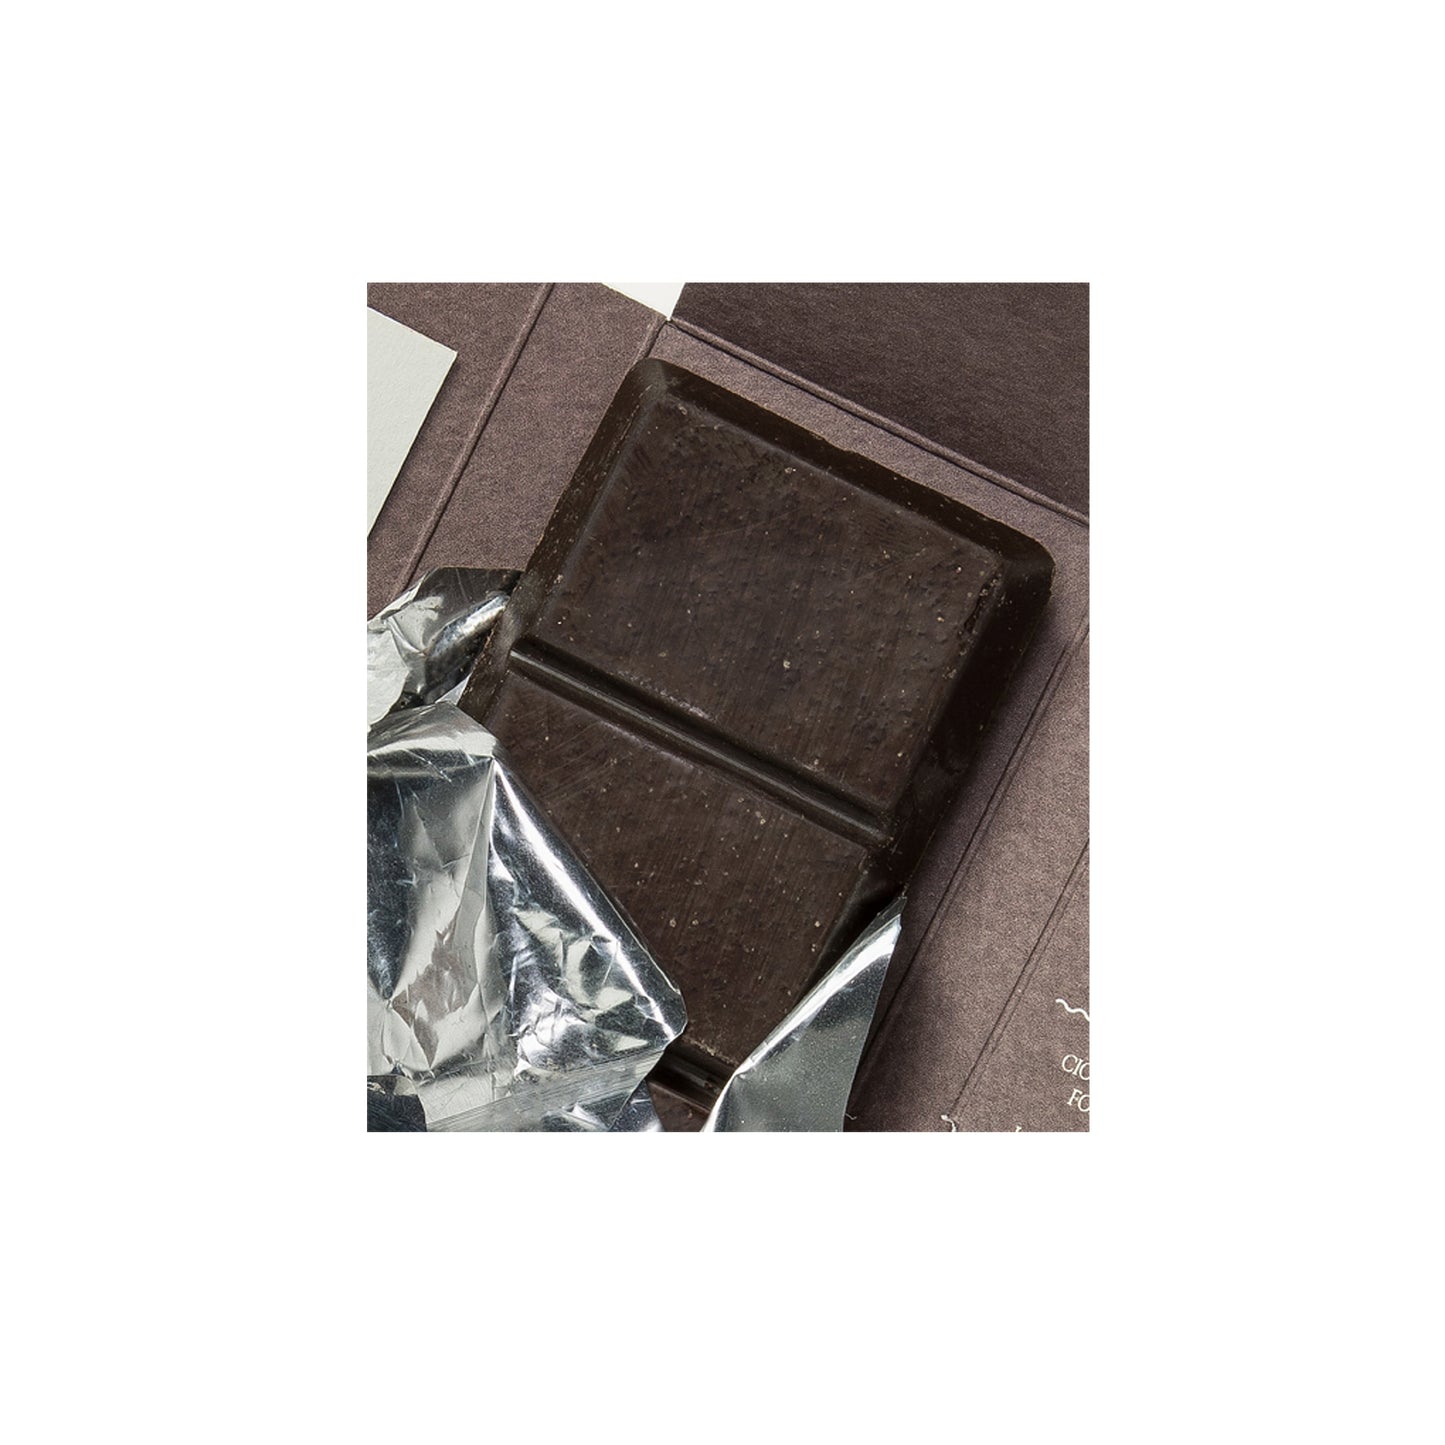 Sabadi 70% chocolate Modica orgánico oscuro con azúcar moscovado 1.76 oz